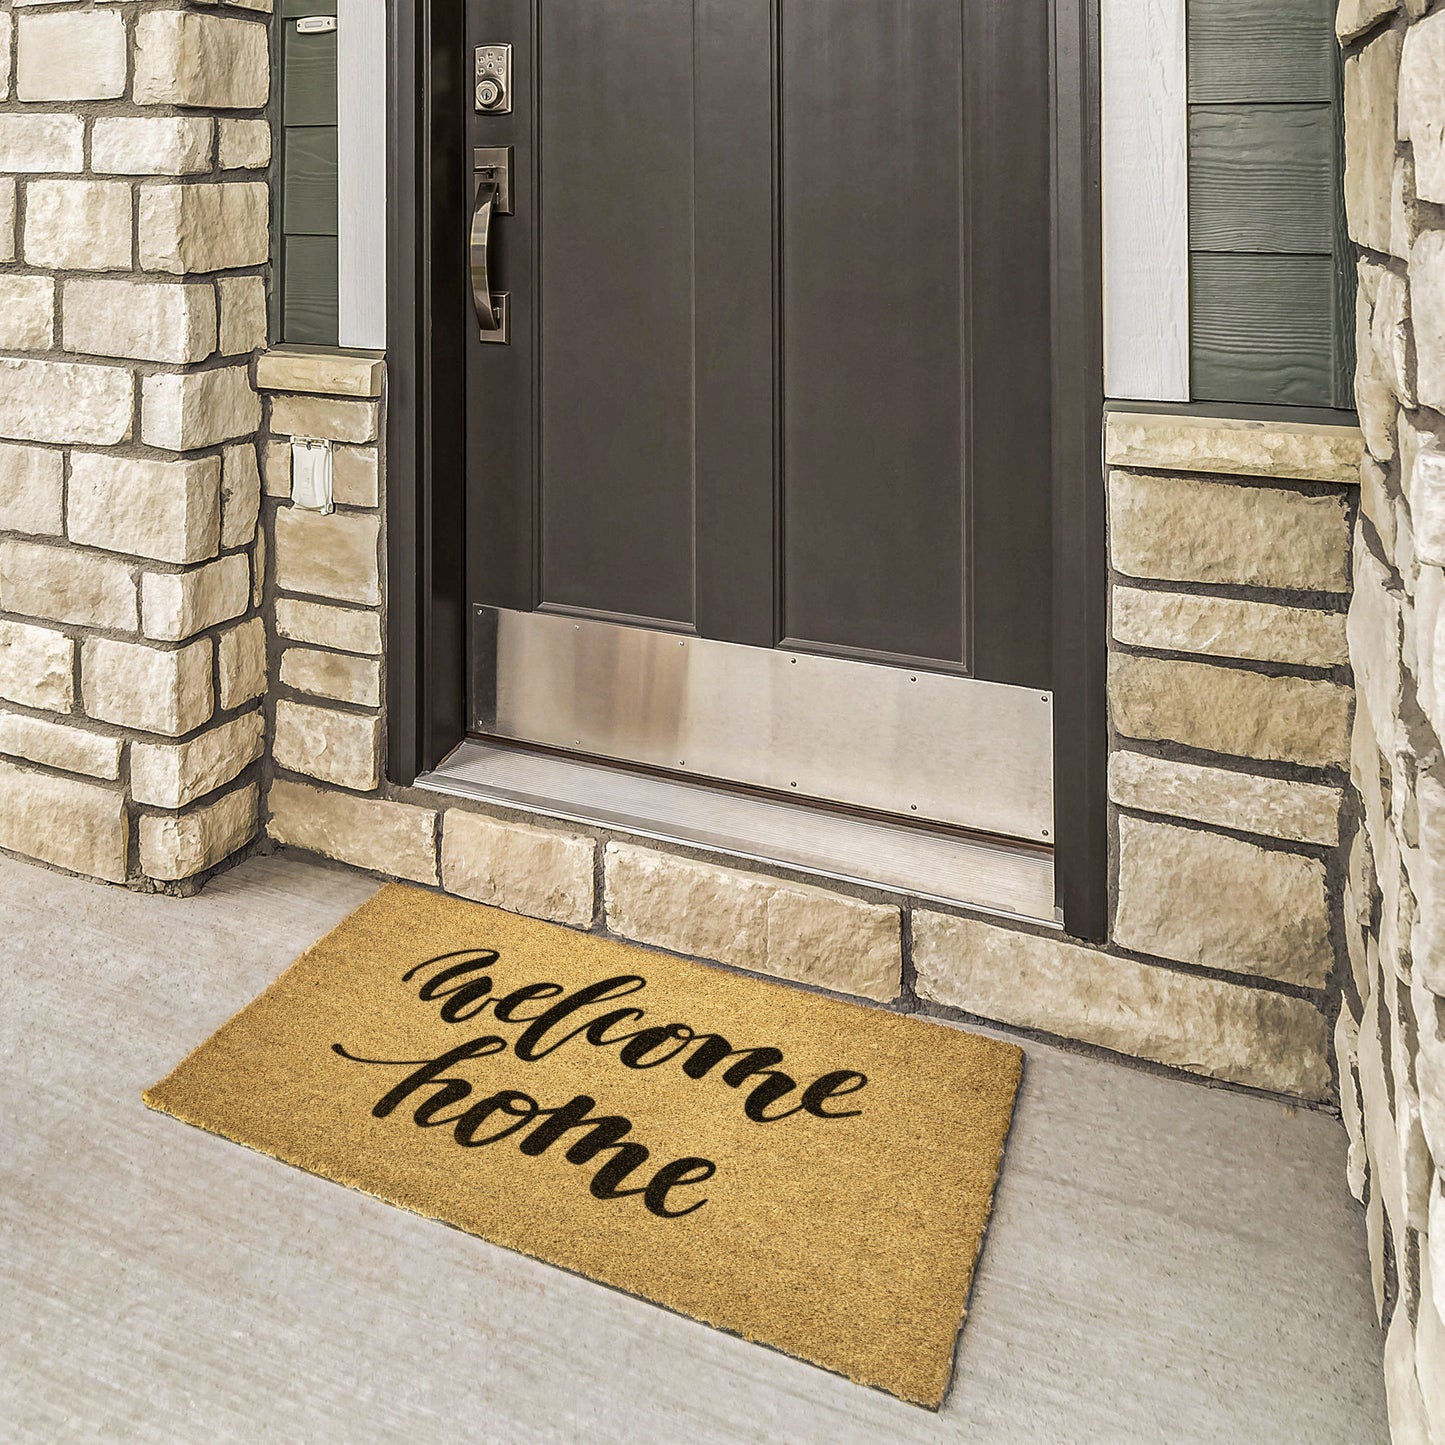 Welcome Home Doormat, Front Entryway Mat, Porch Door Mat